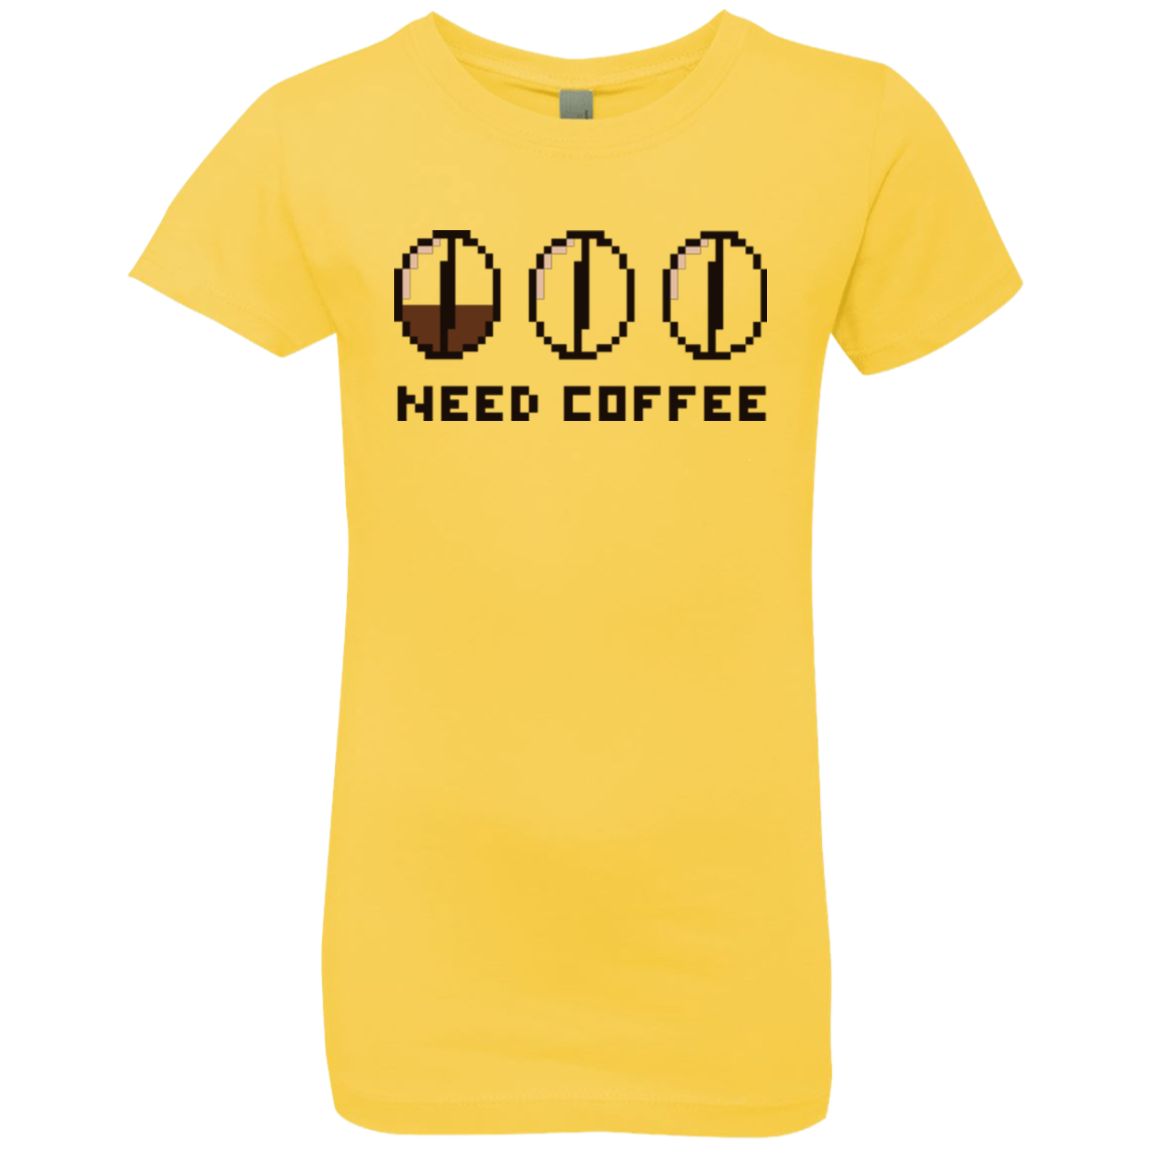 Need Coffee Girls Premium T-Shirt